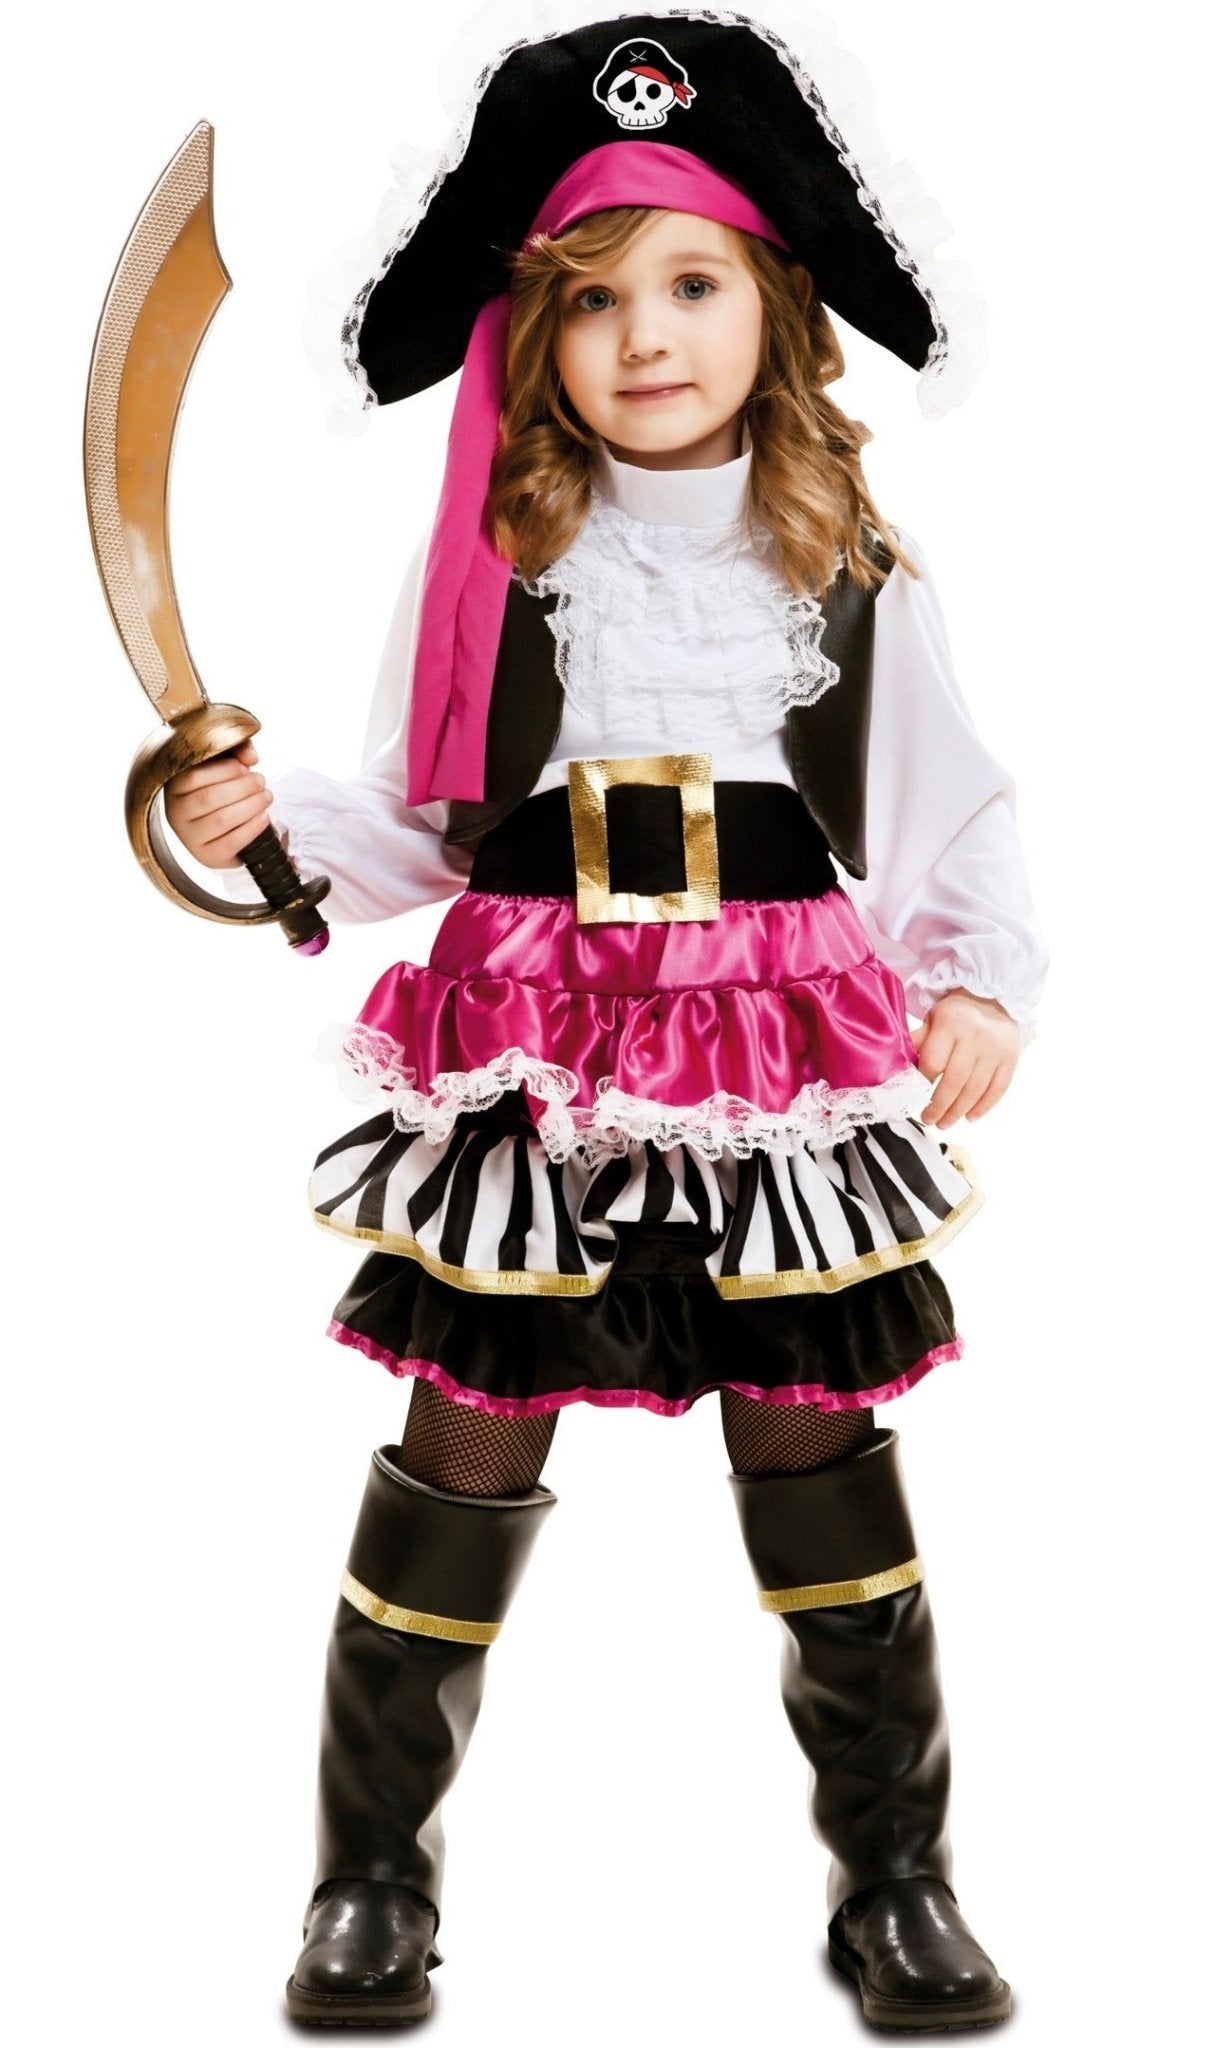 Disfraz Pirata de los 7 mares para mujer - Disfraces No solo fiesta